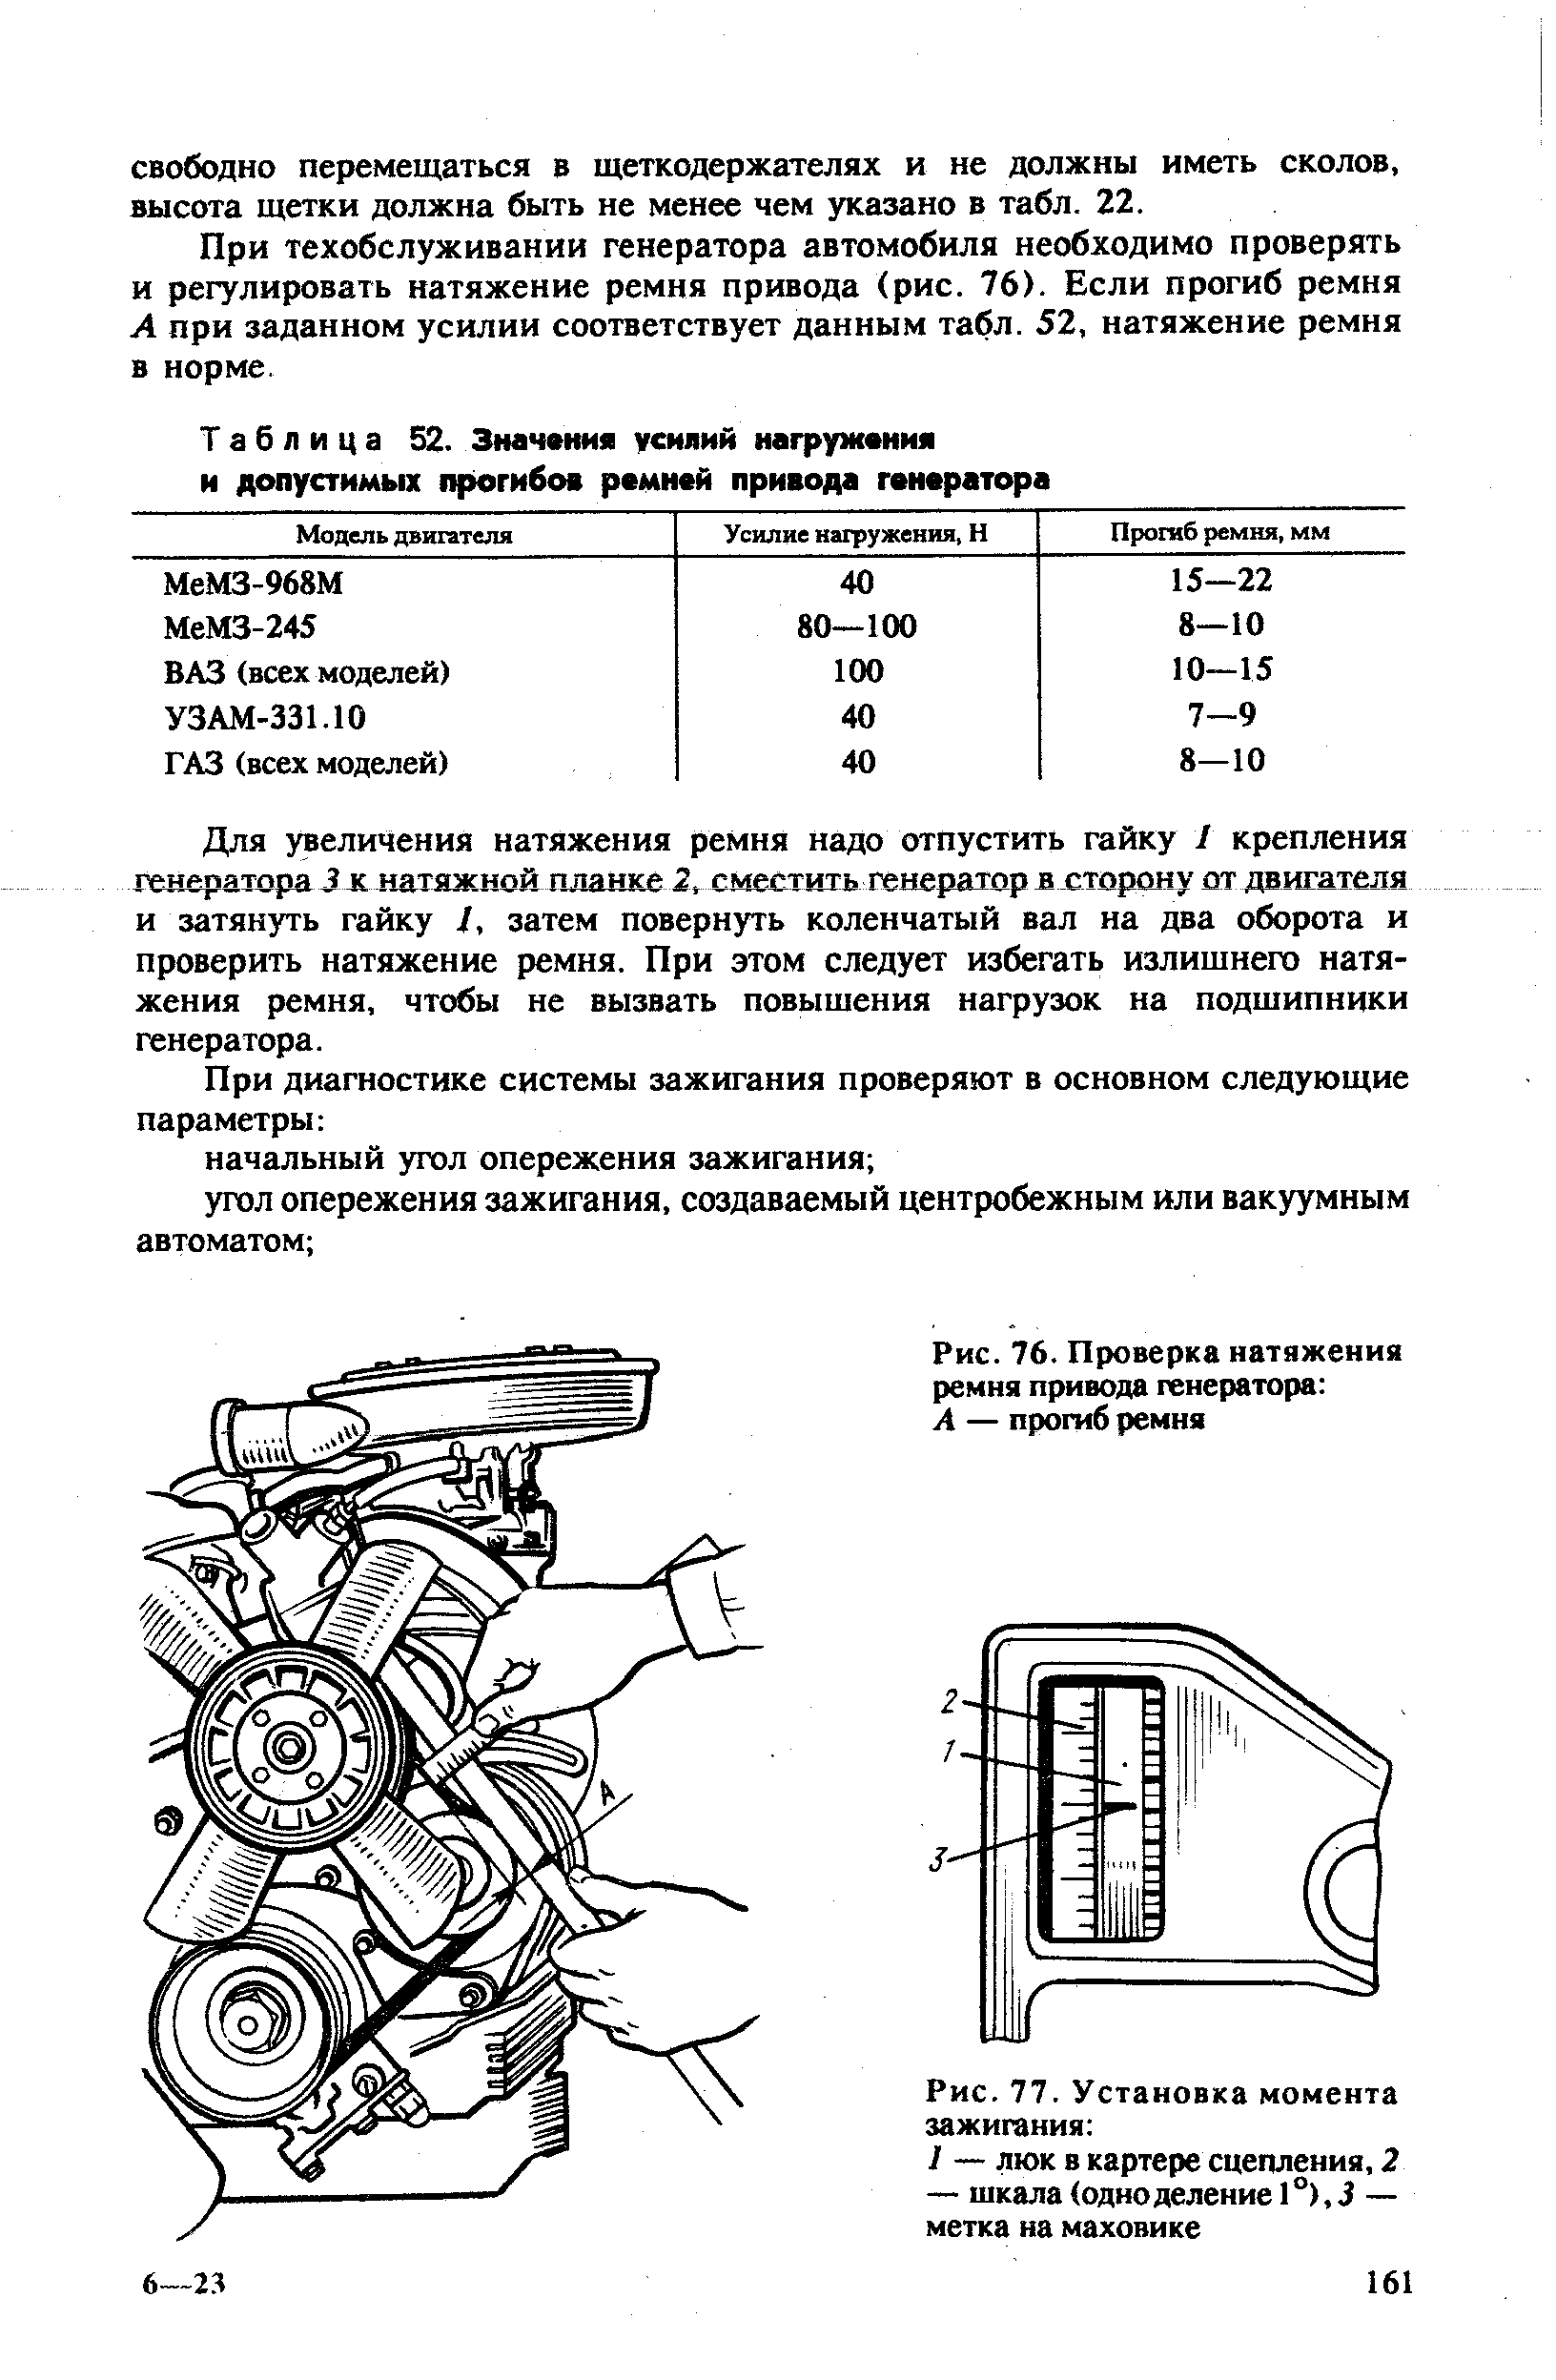 Таблица 52. Значения усилий нагружения и допустимых прогибов ремней привода генератора
